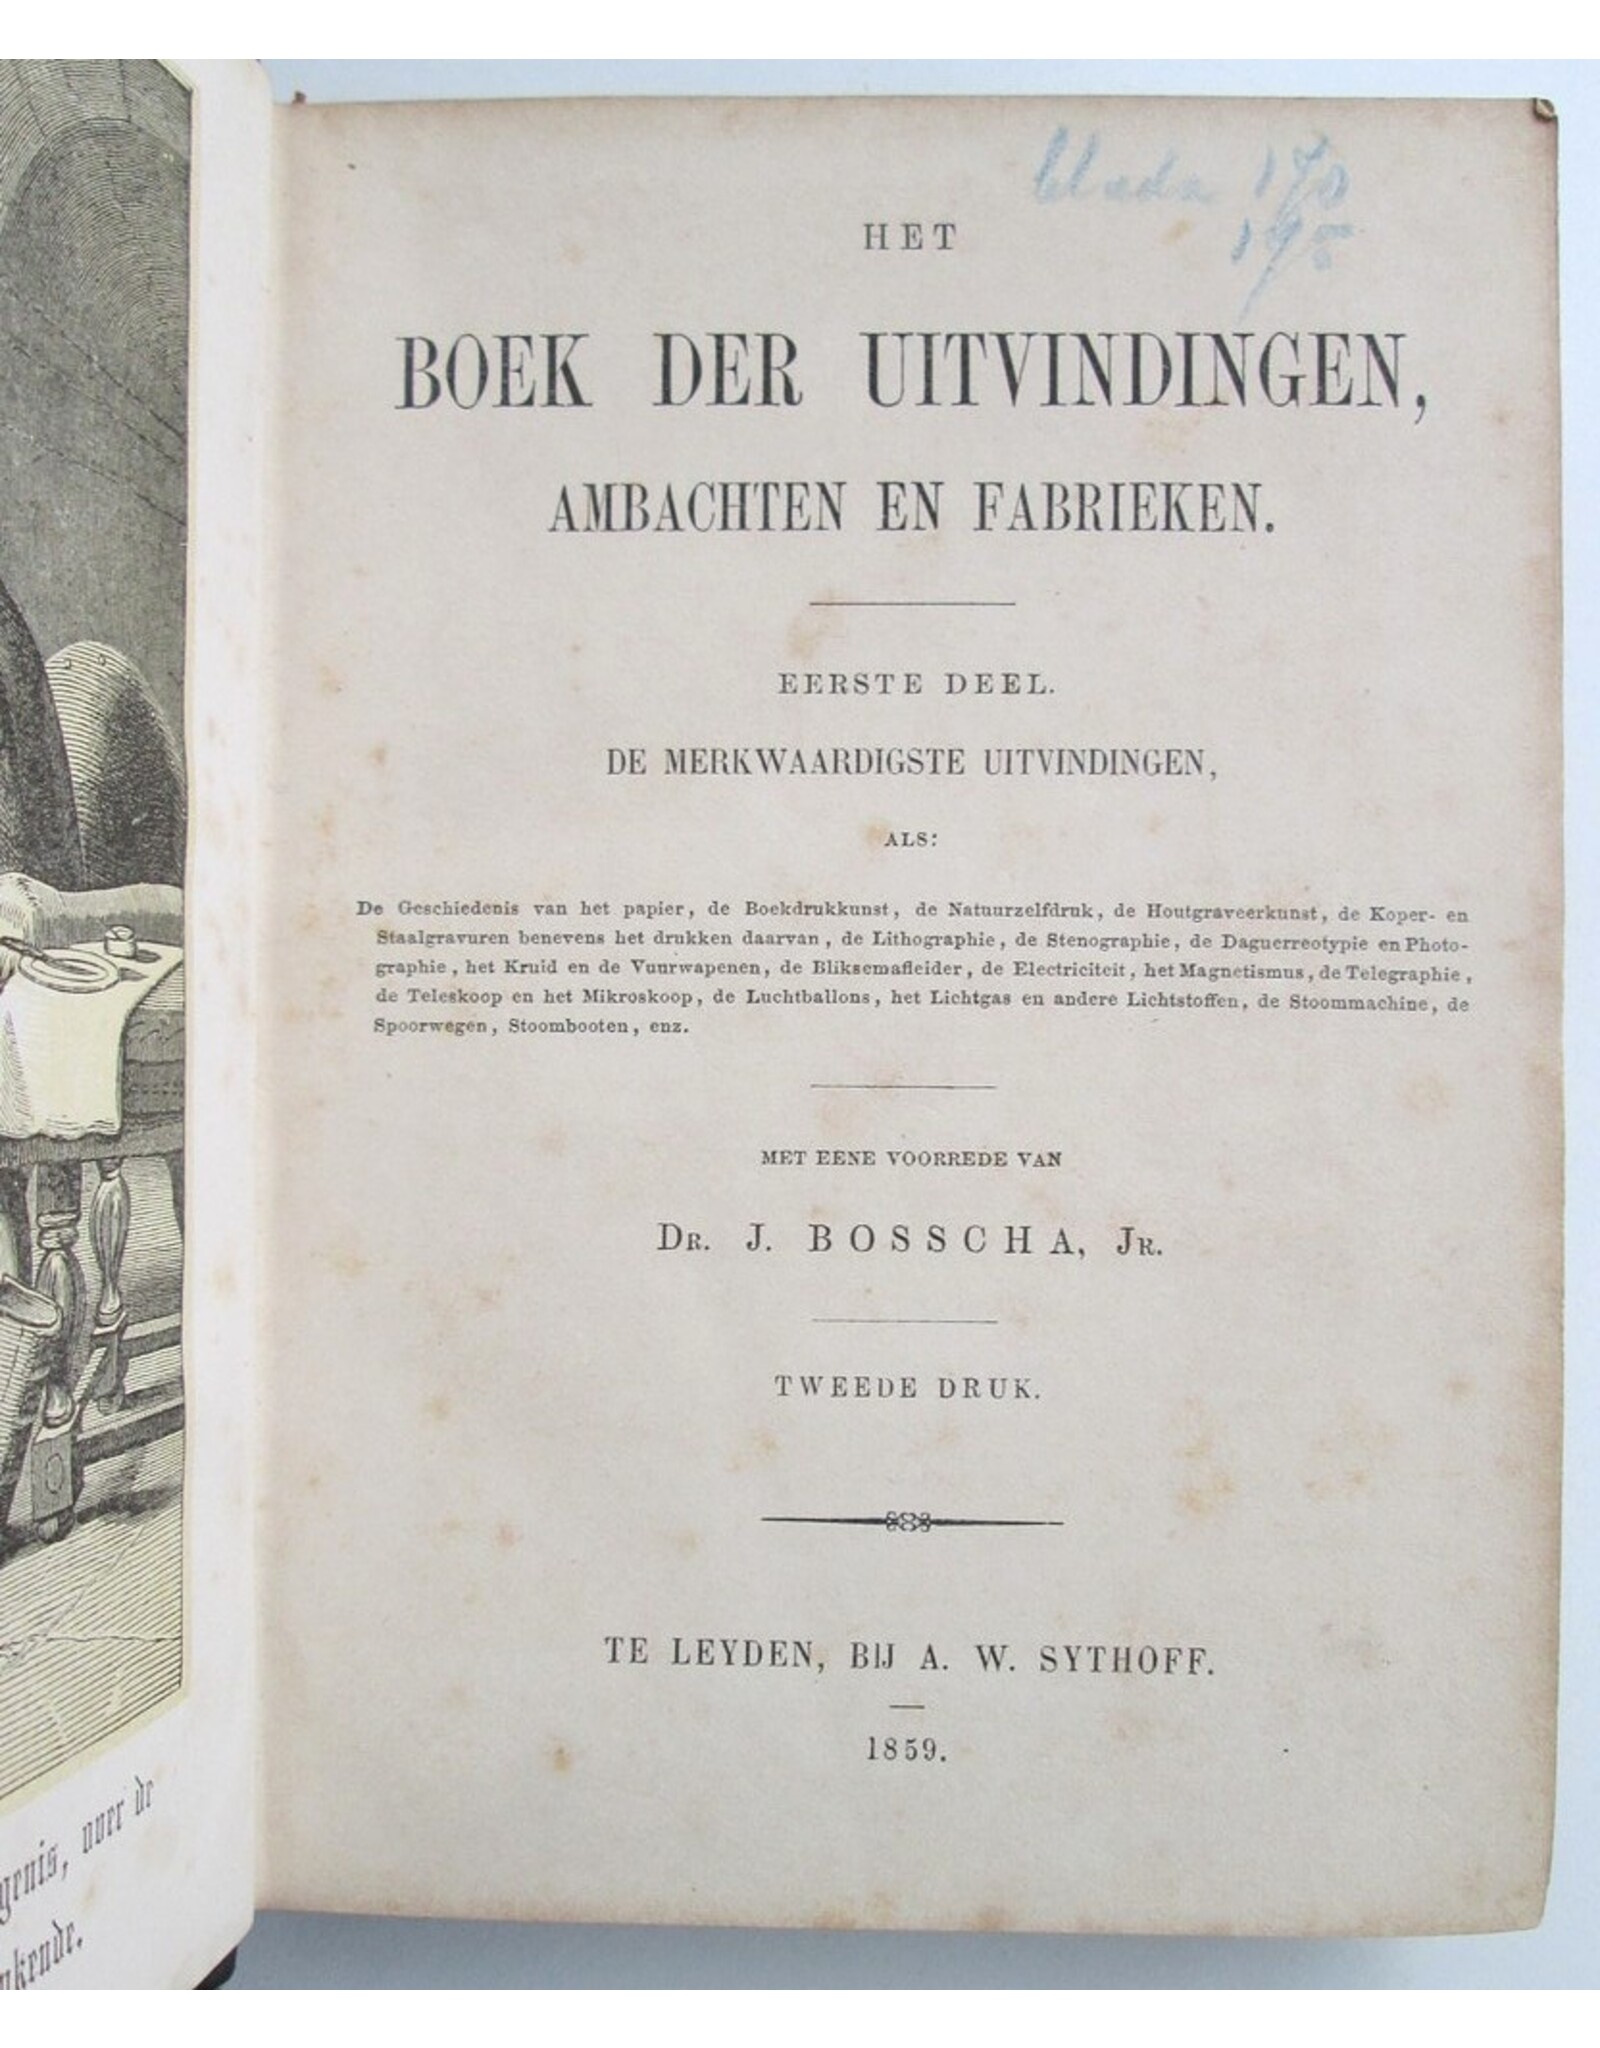 Dr. J. Bosscha Jr. [transl.] - Het Boek der Uitvindingen, Ambachten en Fabrieken. Eerste deel: De merkwaardigste uitvindingen [...]